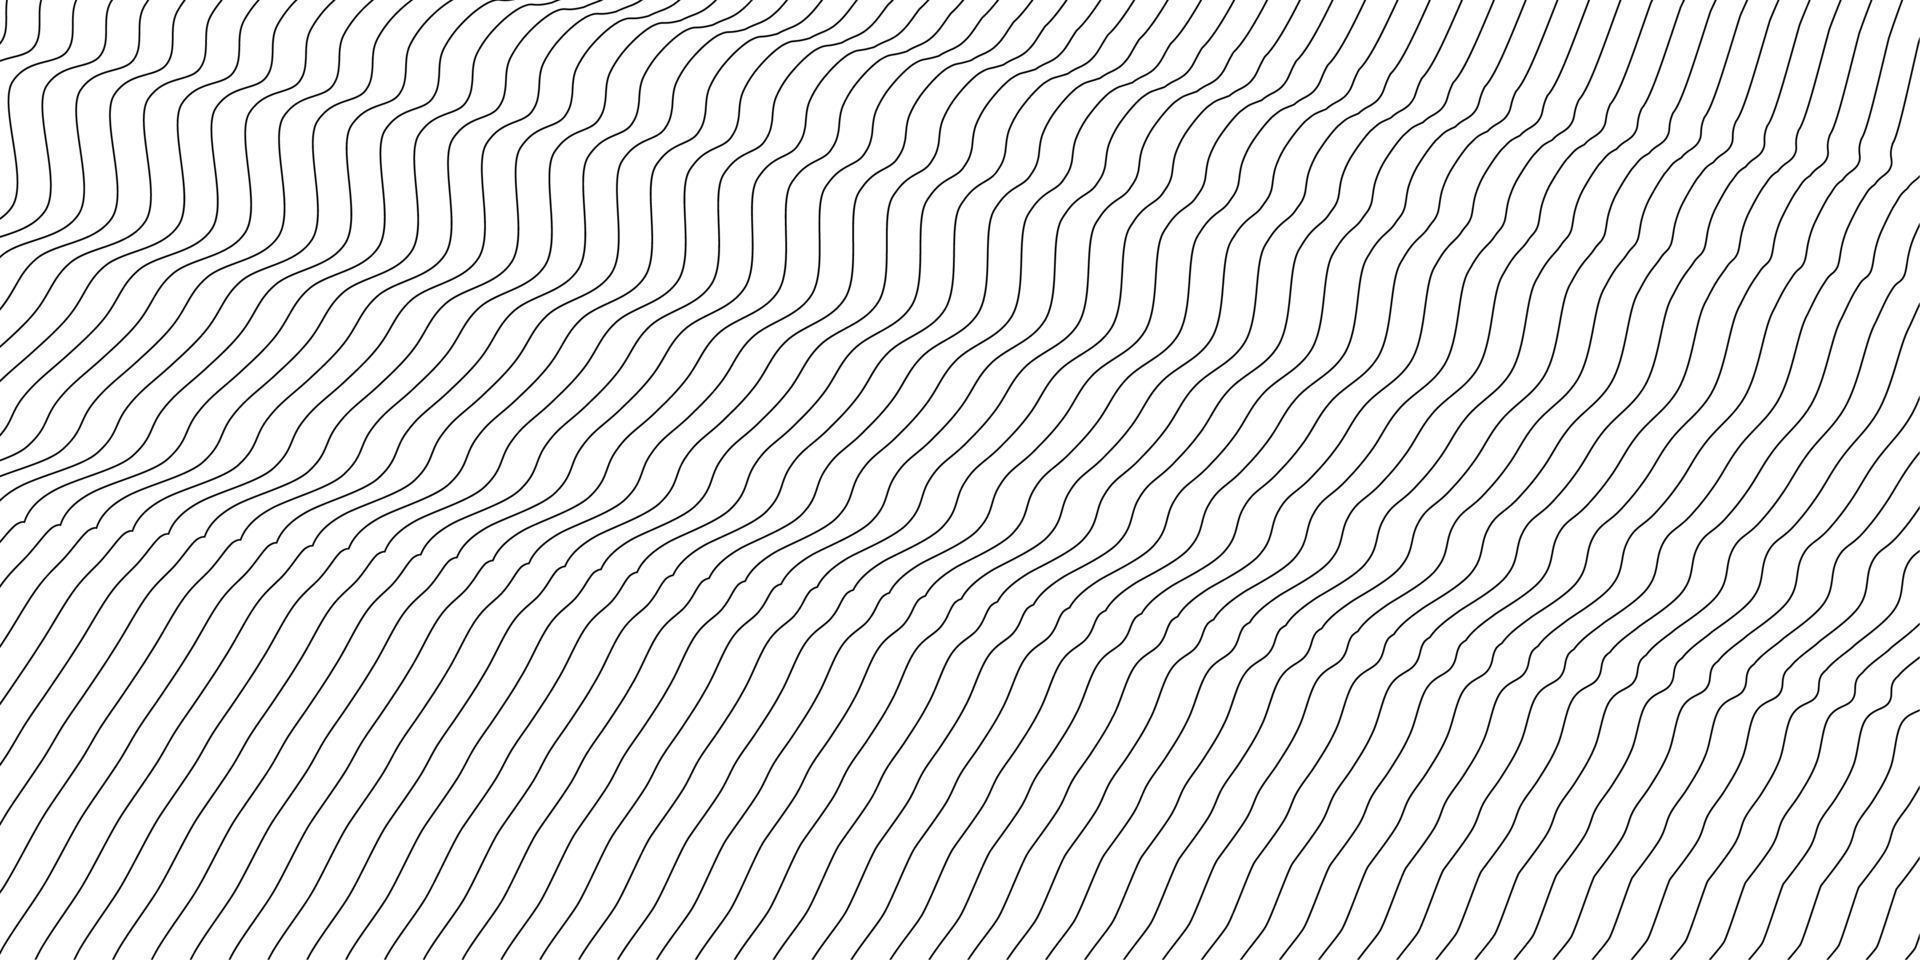 abstrait ondulé. fine ligne sur blanc vecteur